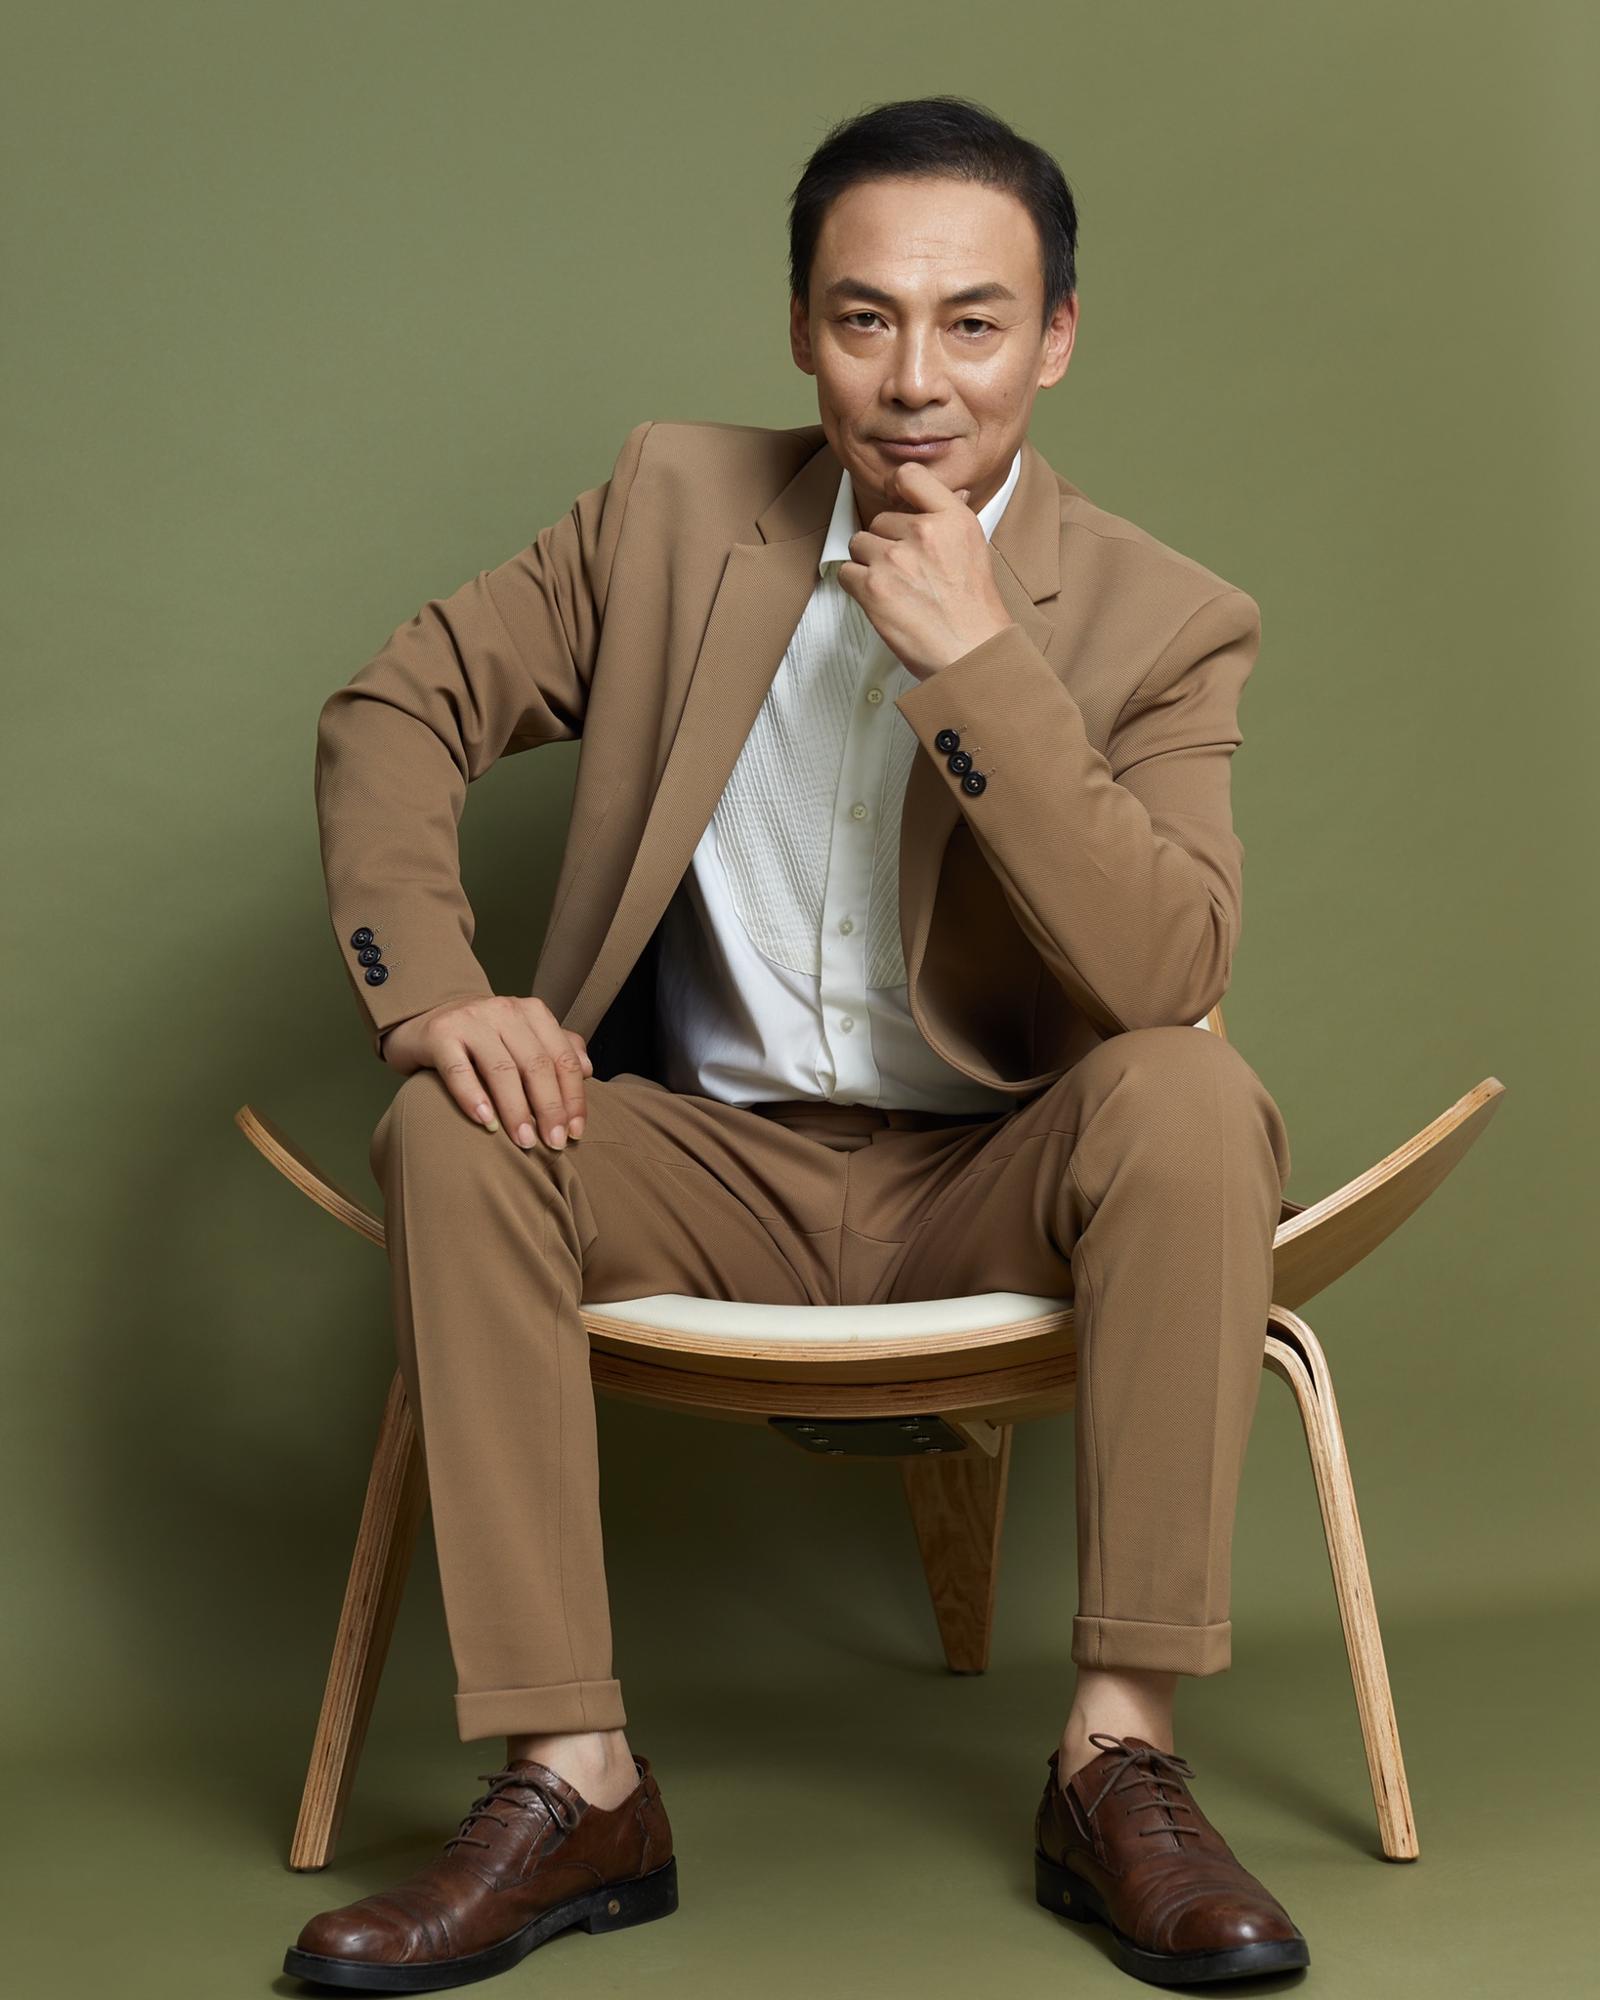 杨猛,1963年7月15日出生于吉林省吉林市,中国内地男演员.